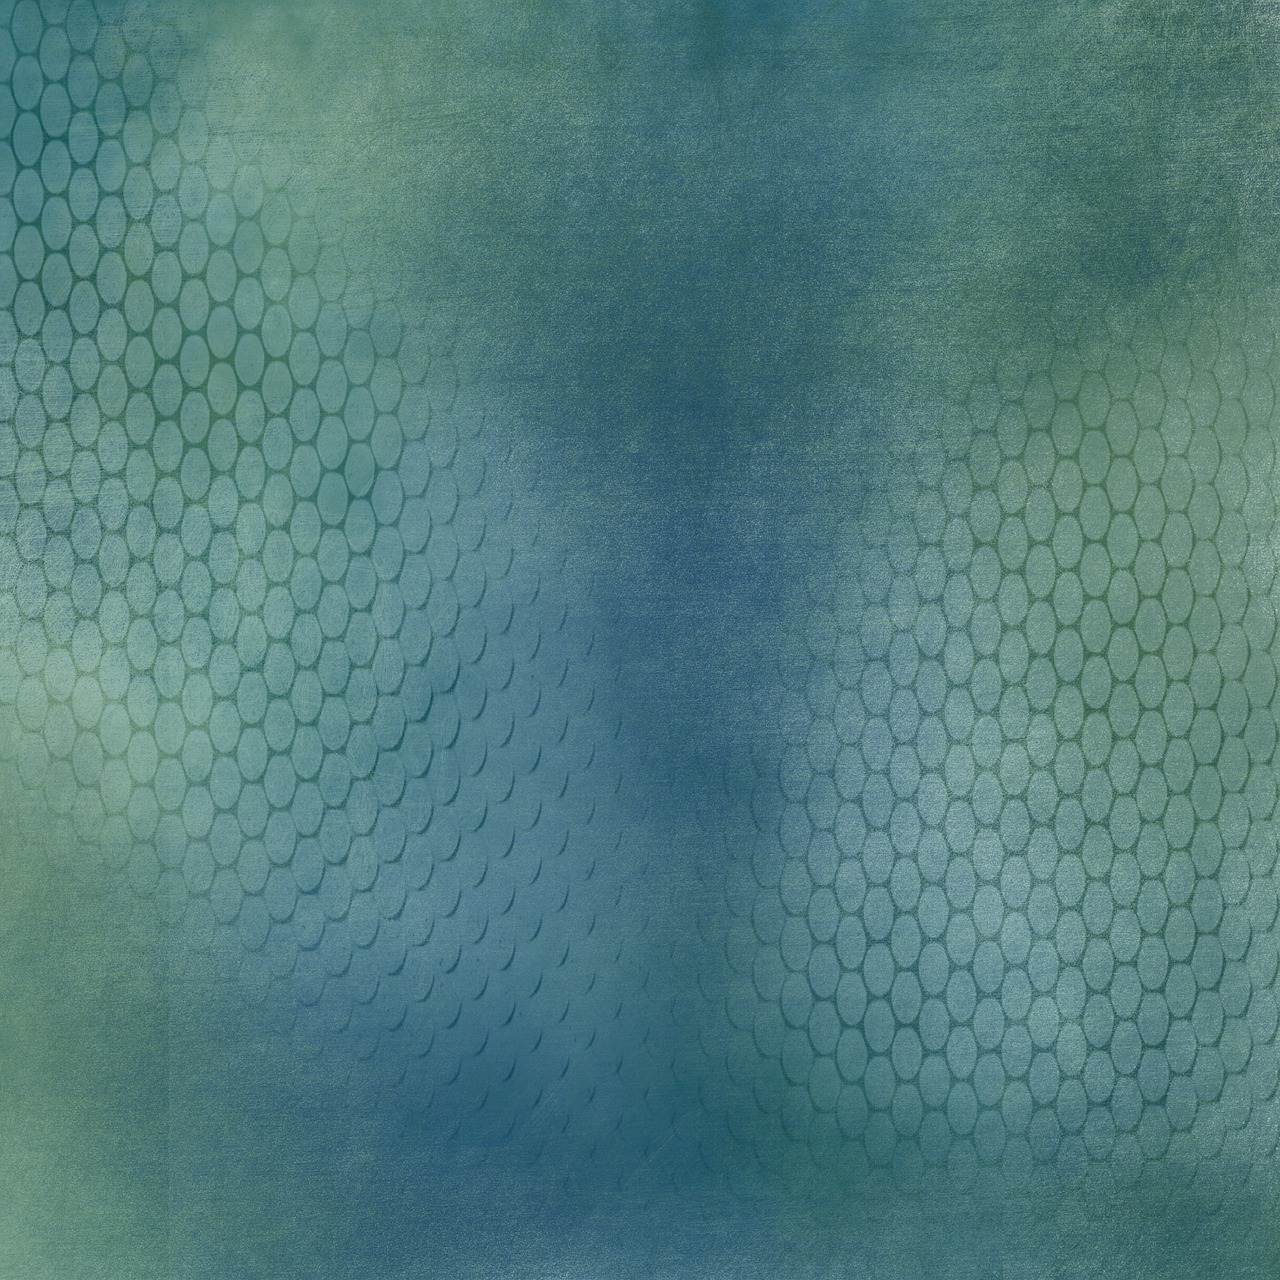 honeycomb background blue free photo